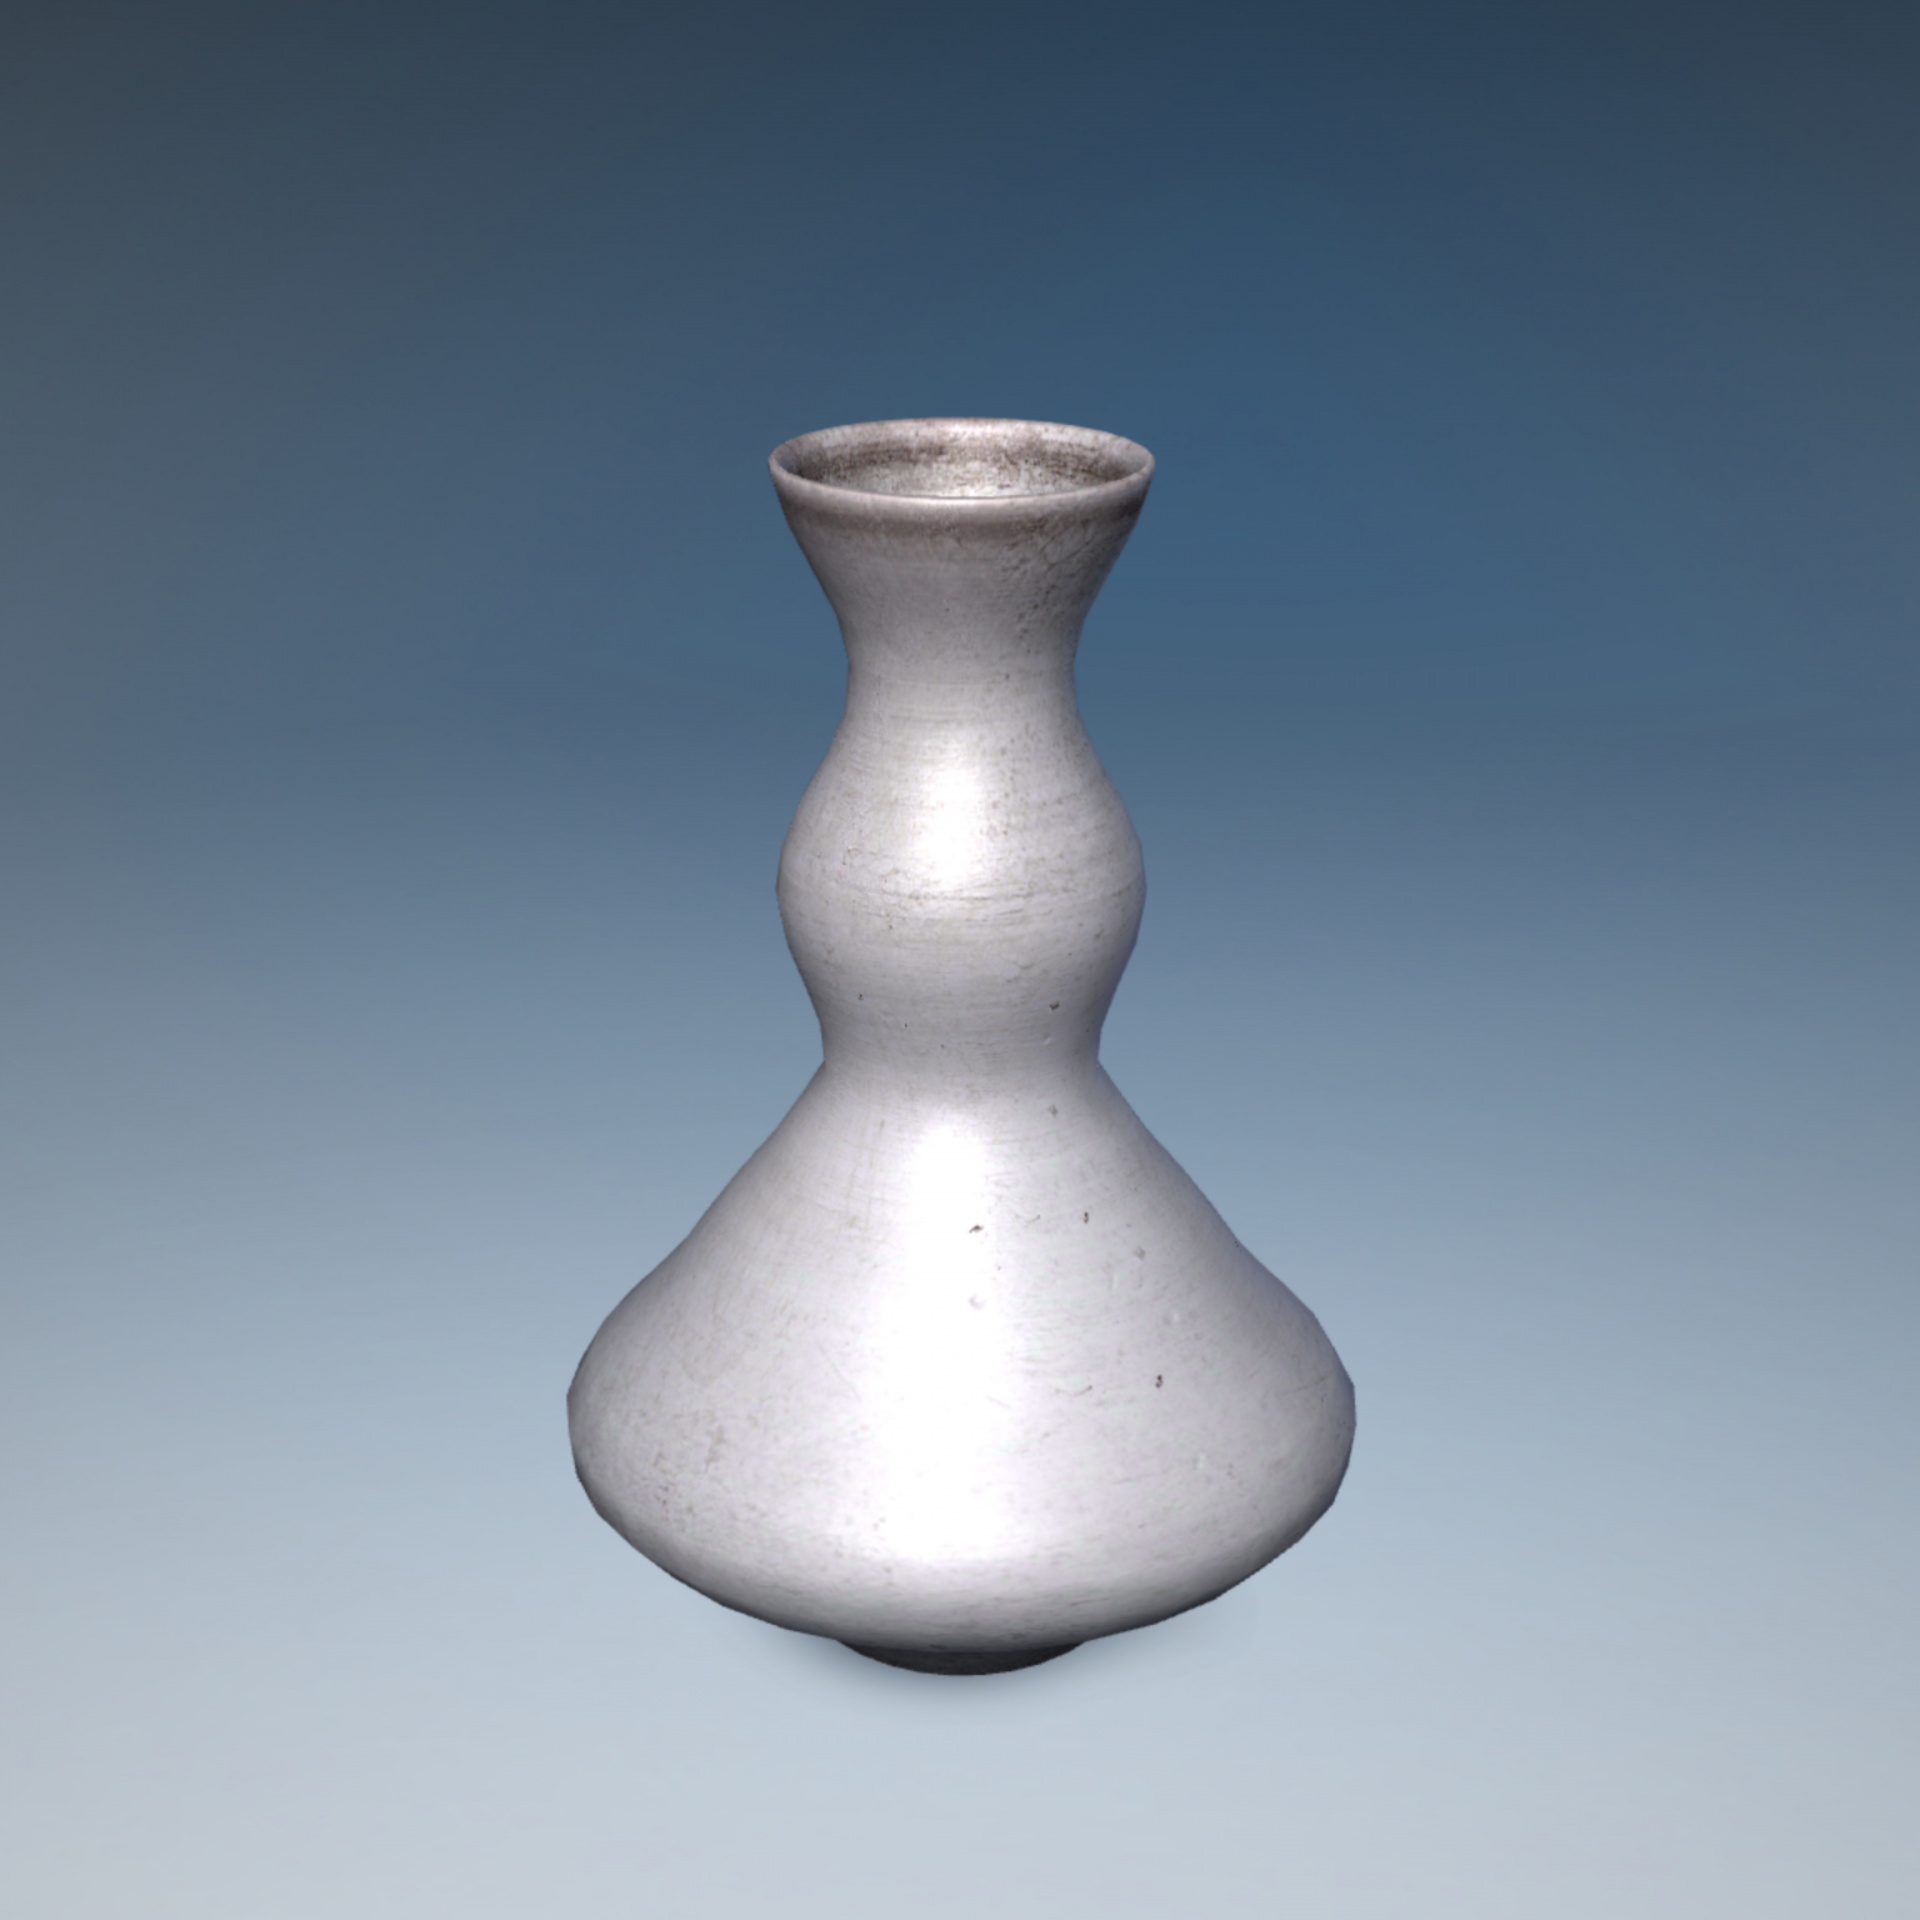 slim grey vase free photo